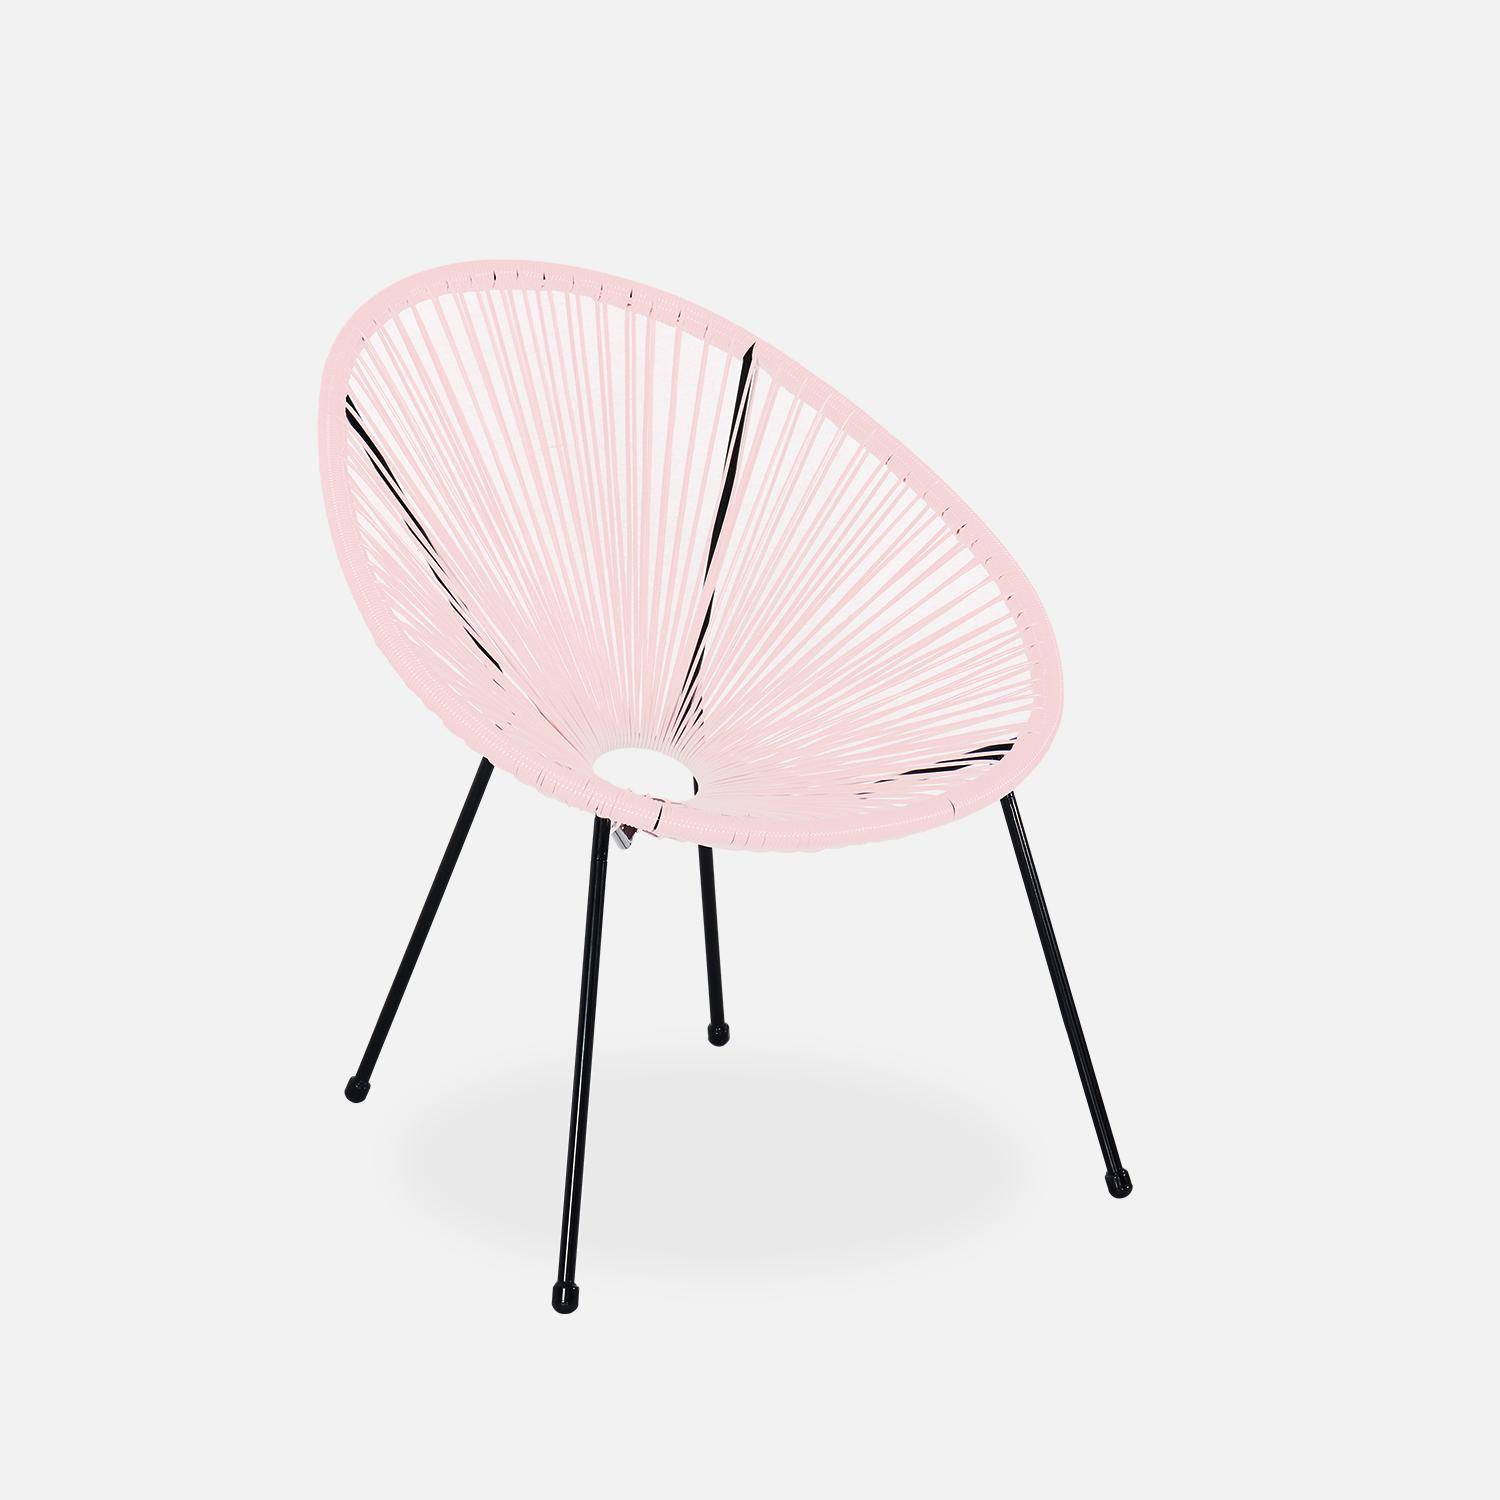 ACAPULCO stoel ei-vormig - Lichtroze- Stoel 4 poten retro design, plastic koorden, binnen/buiten Photo2